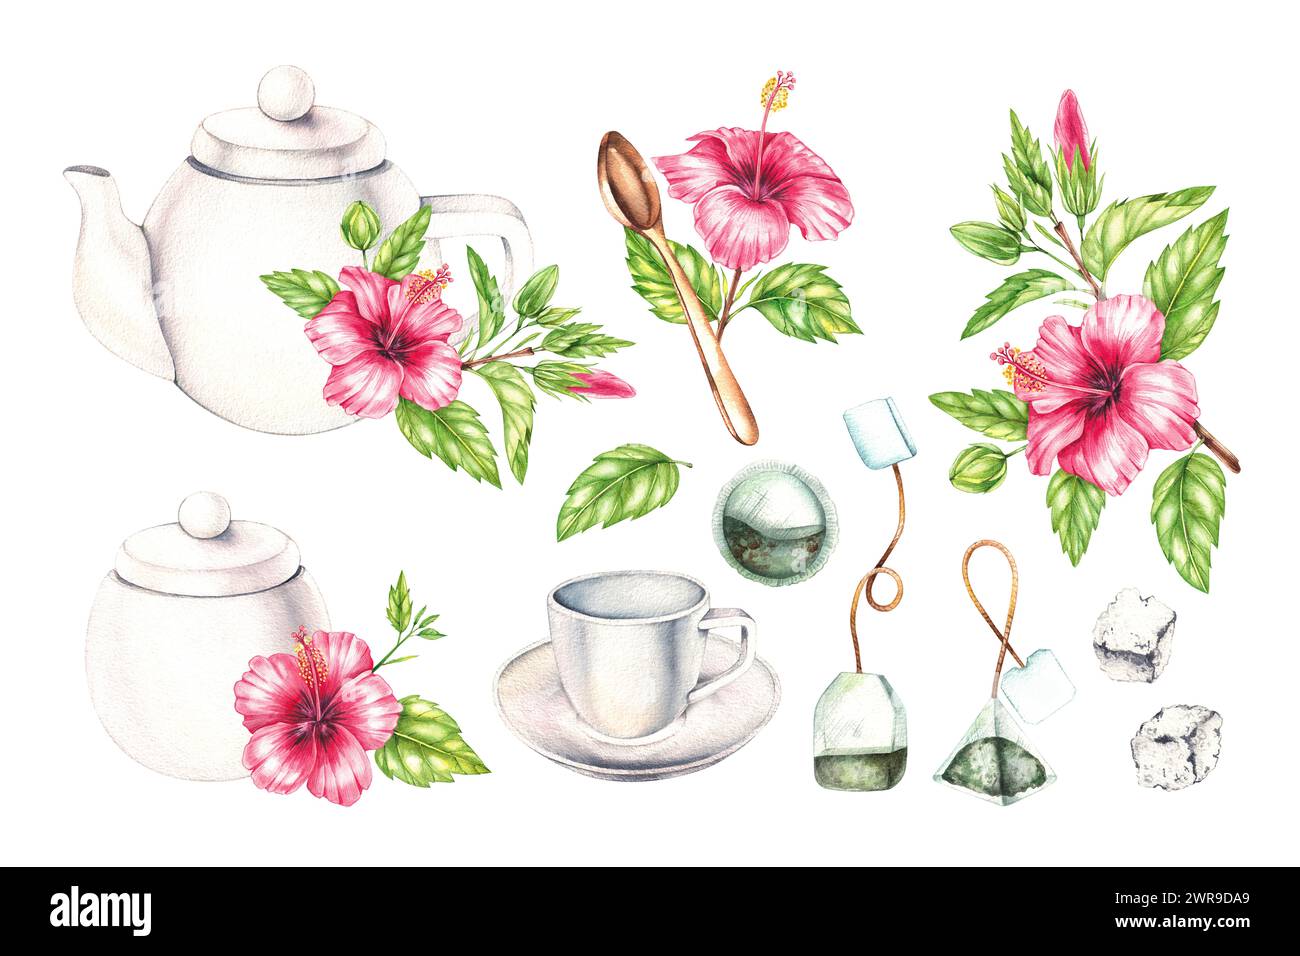 Service à thé blanc aquarelle, sachets de thé, sucre et fleurs d'hibiscus isolés sur blanc. Set de thé pour la conception d'emballages, étiquettes, produits alimentaires, etc Banque D'Images